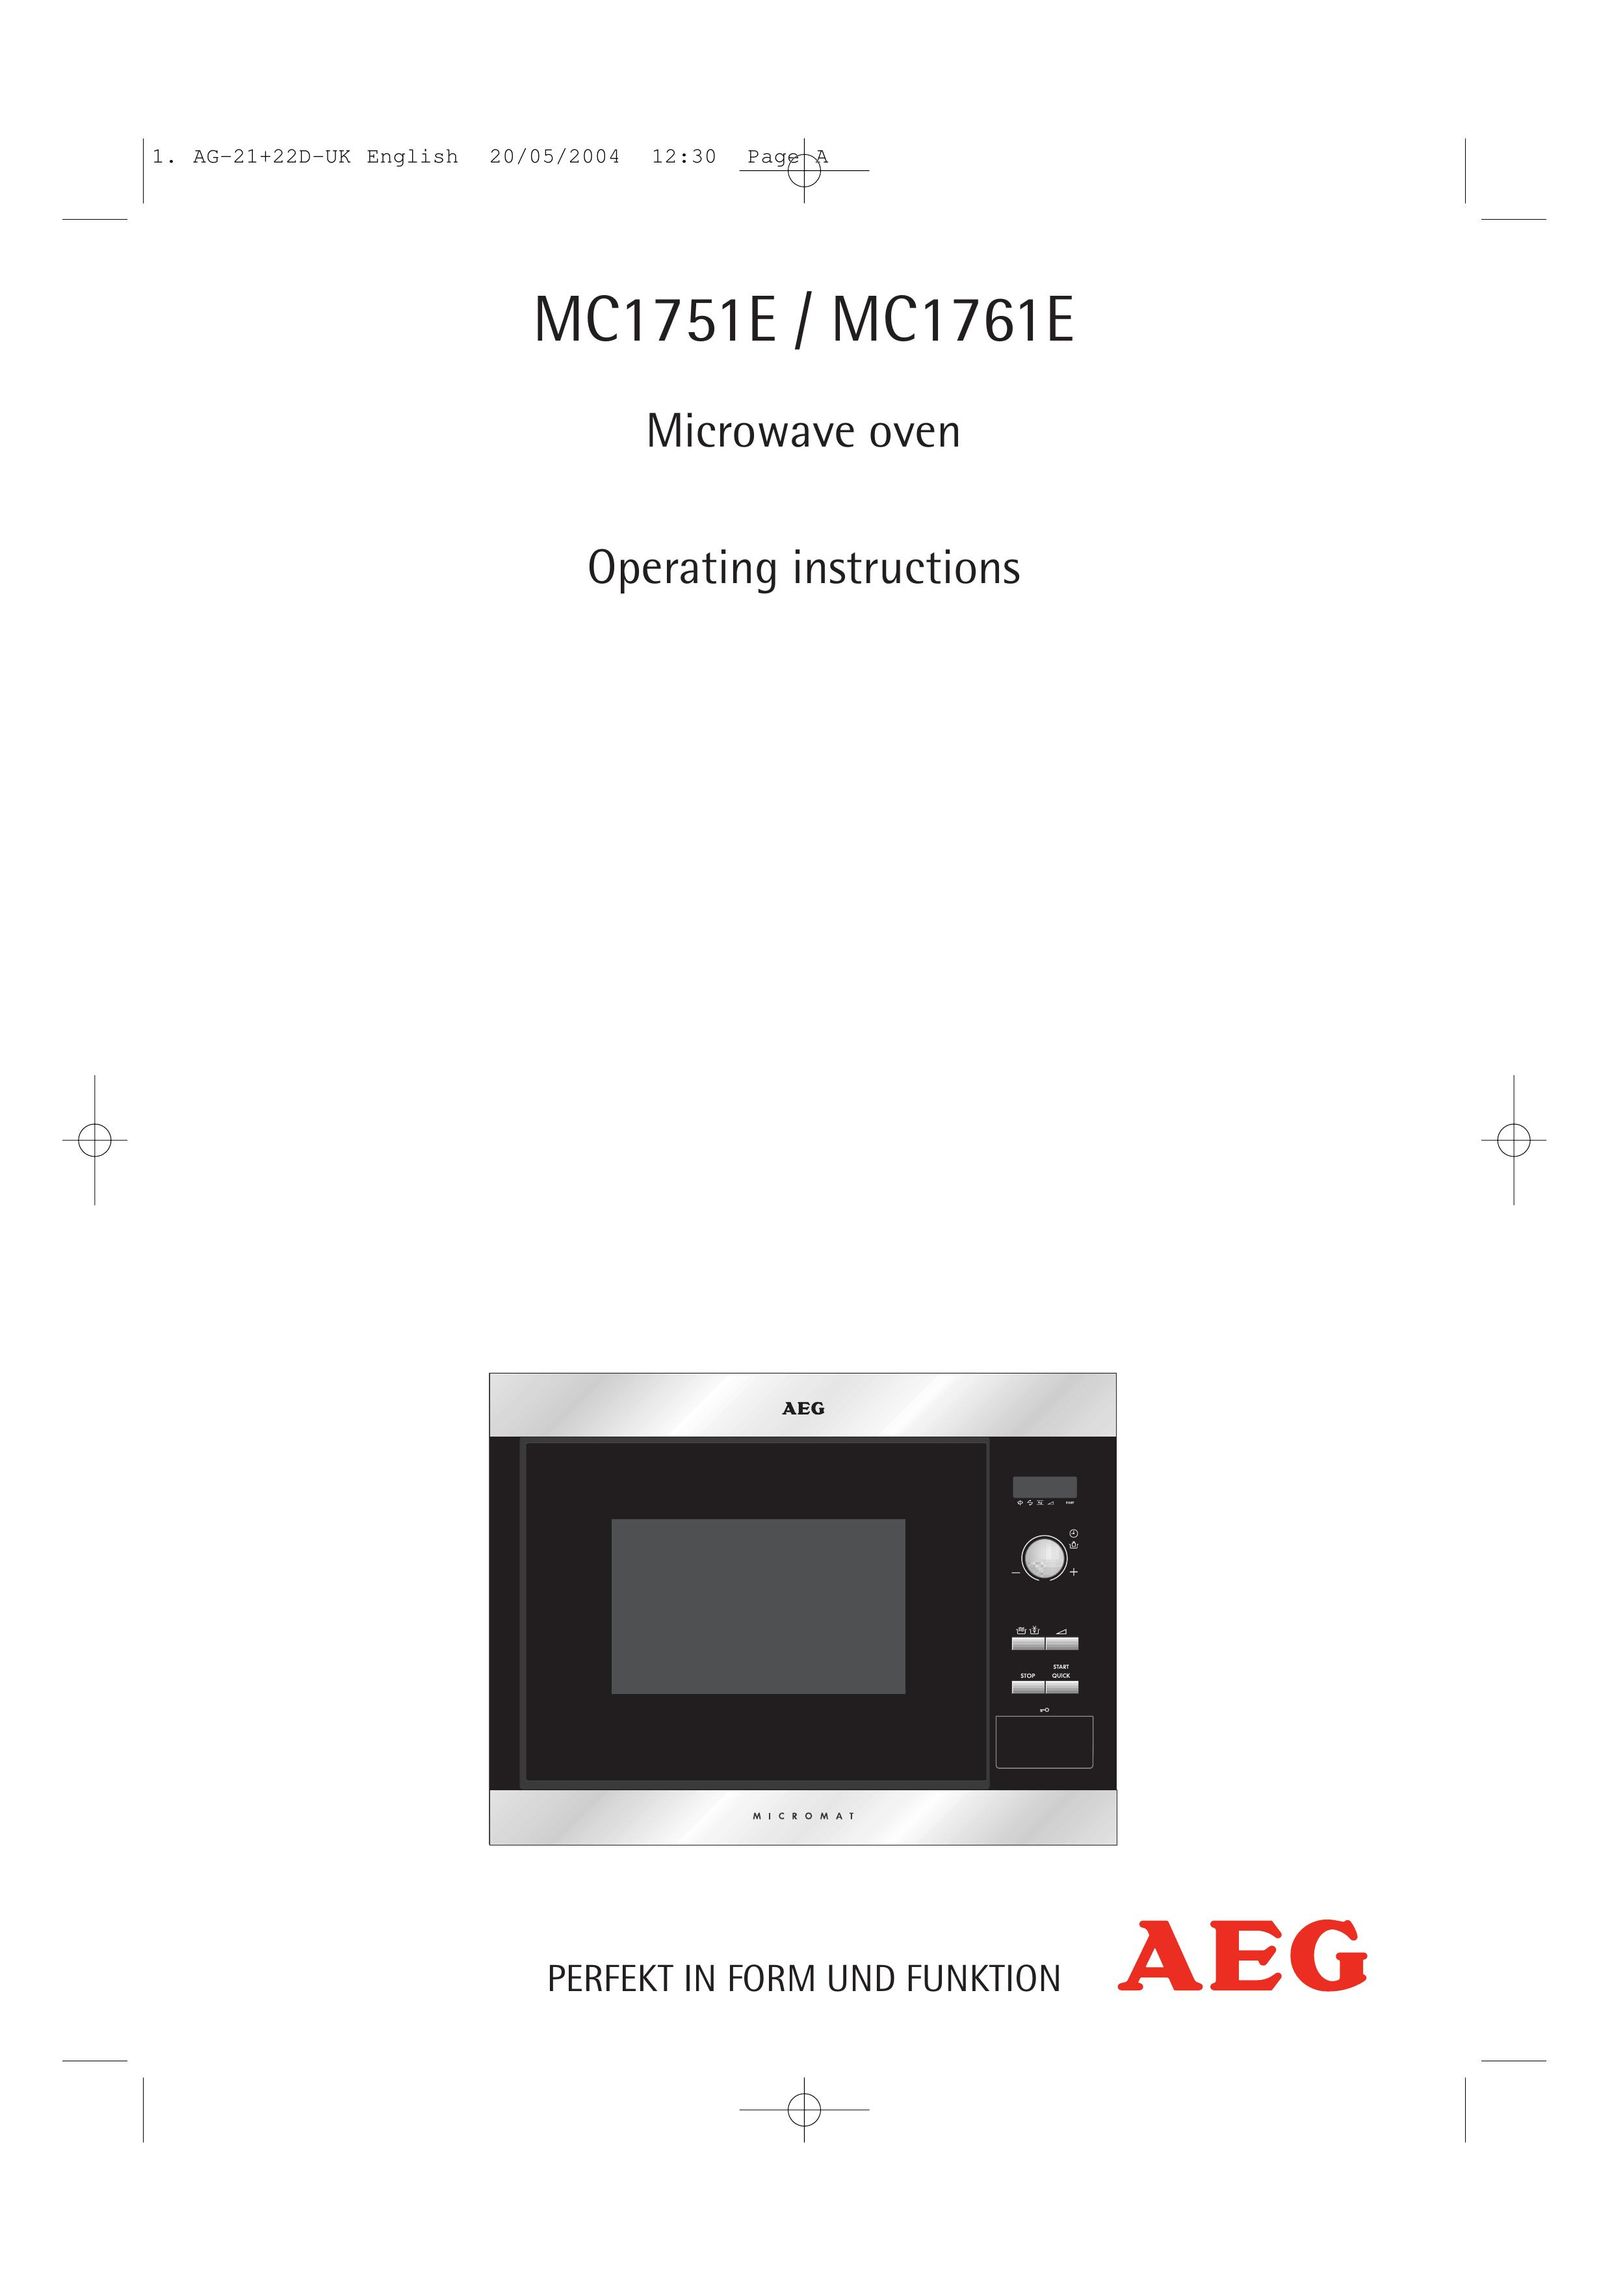 AEG MC1751E Microwave Oven User Manual